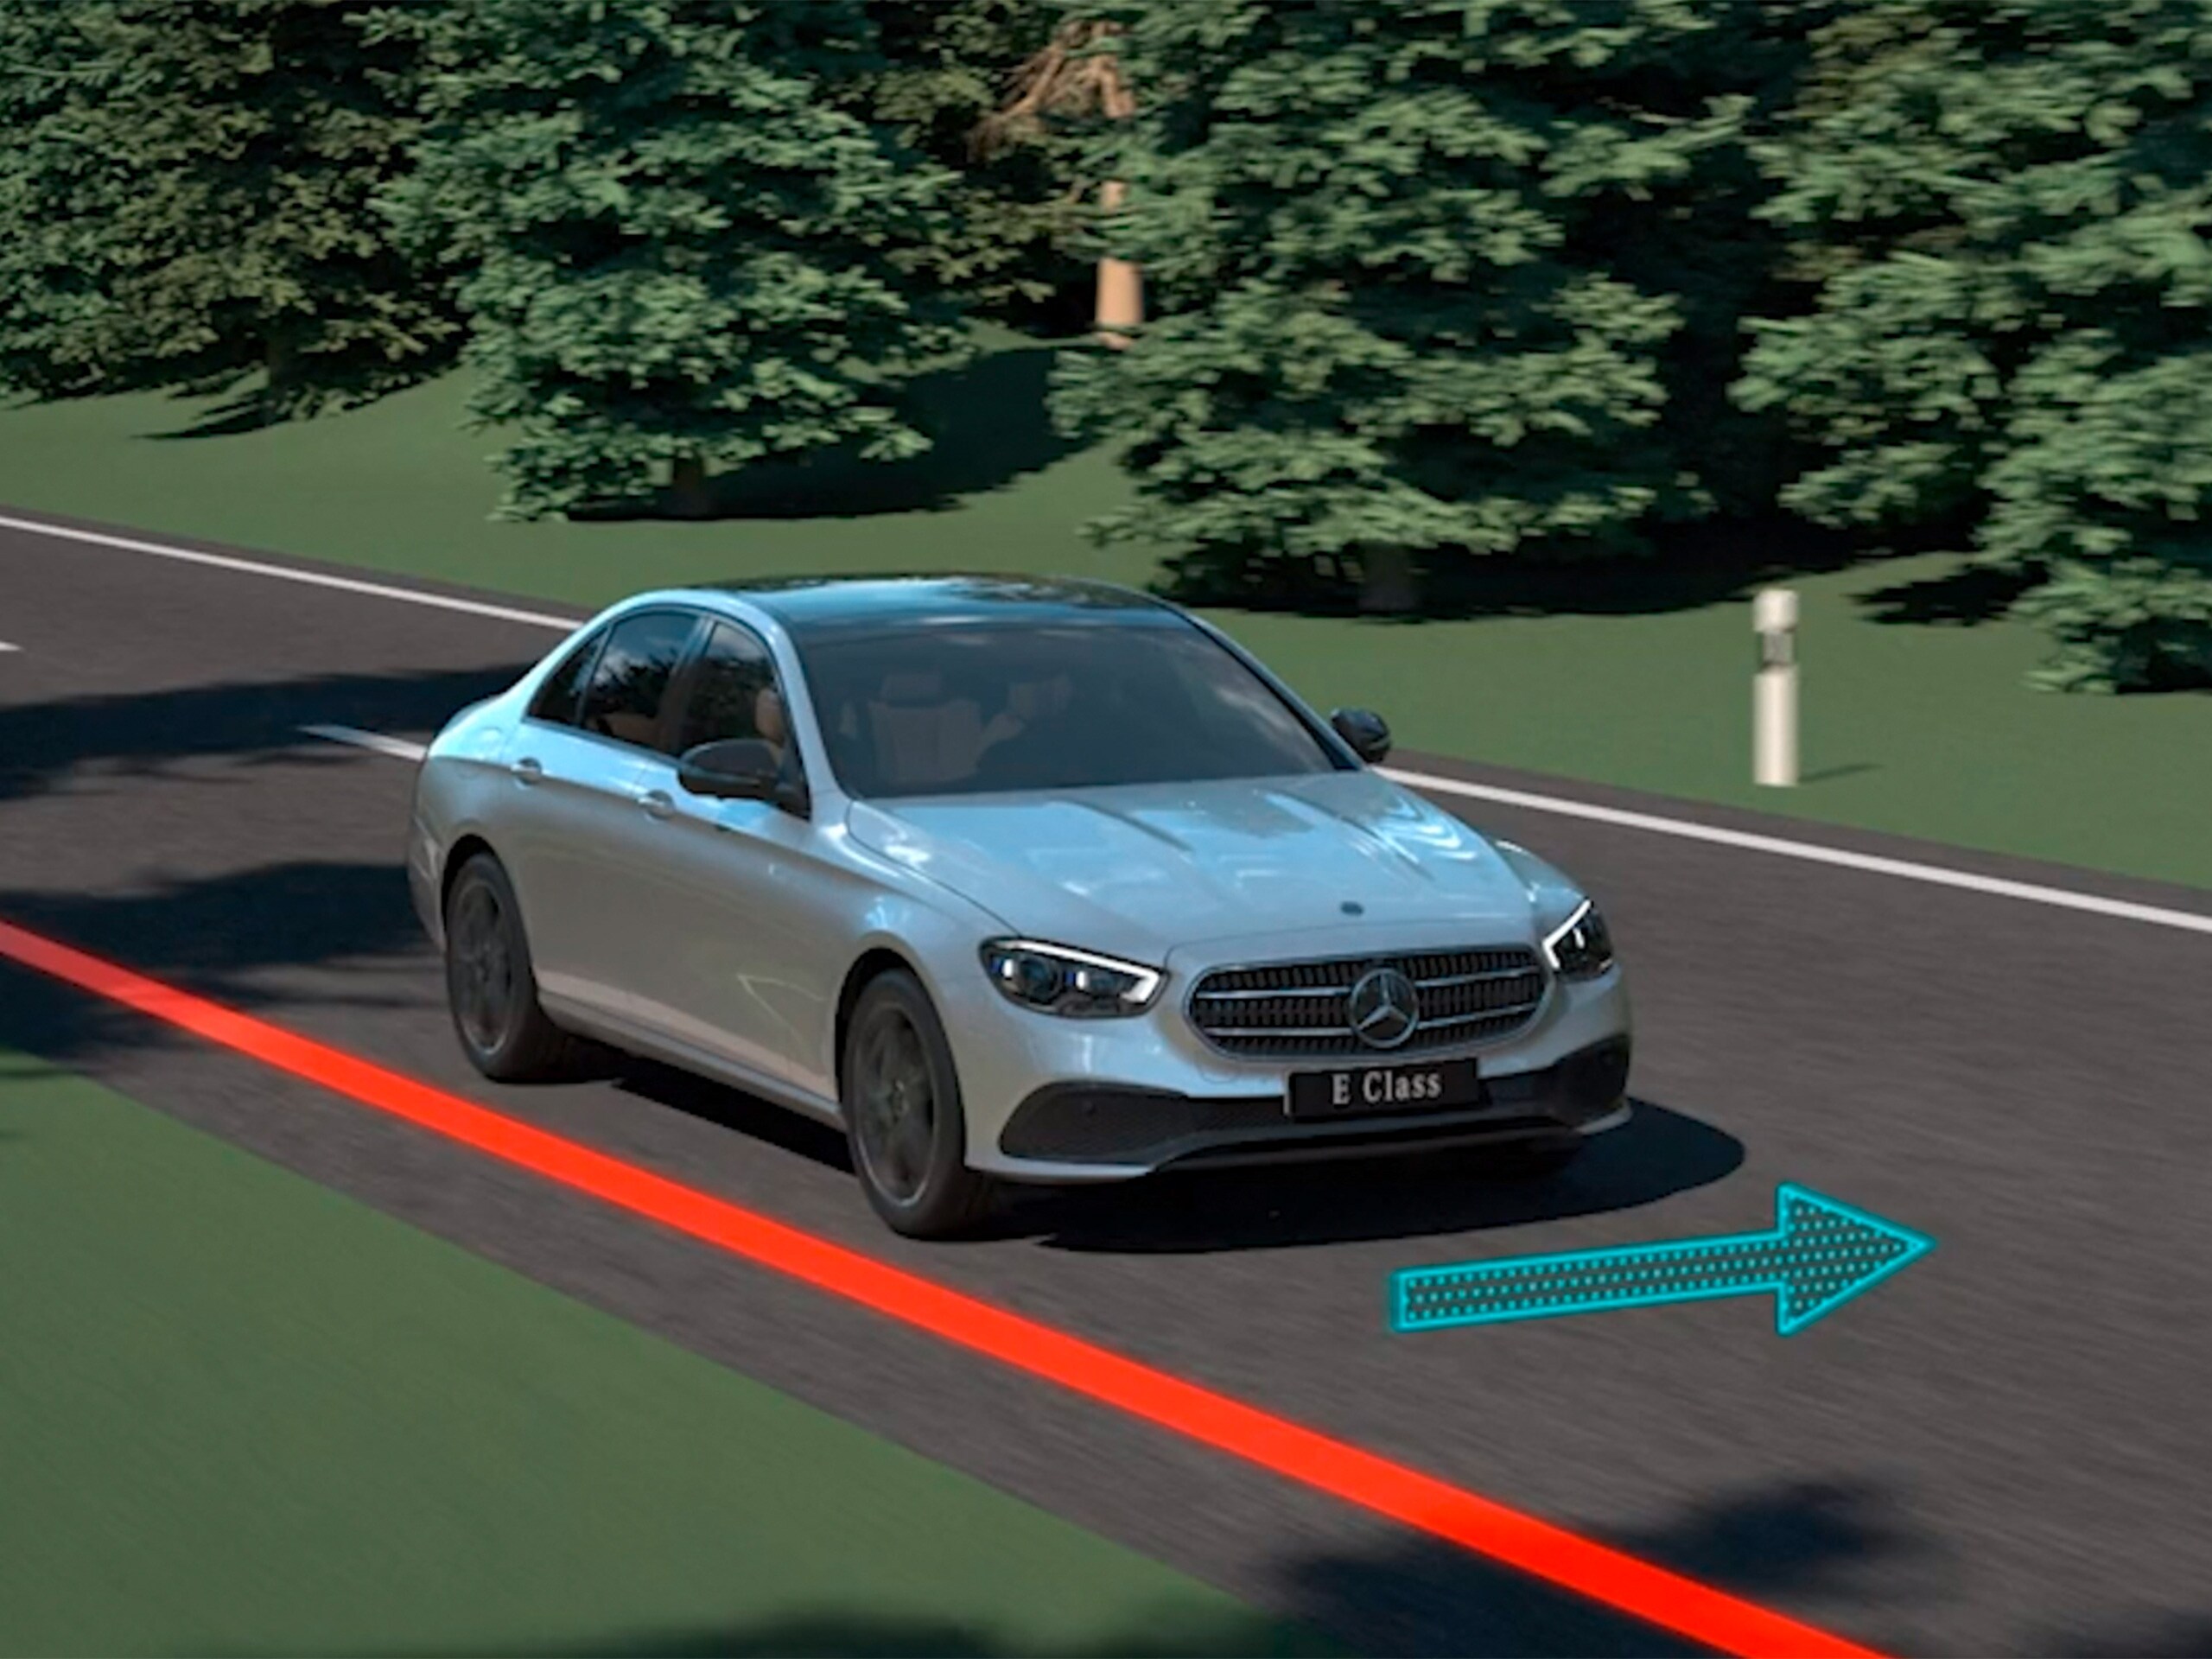 Das Video zeigt die Funktion des Aktiven Lenk-Assistenten im Mercedes-Benz CLS Coupé.